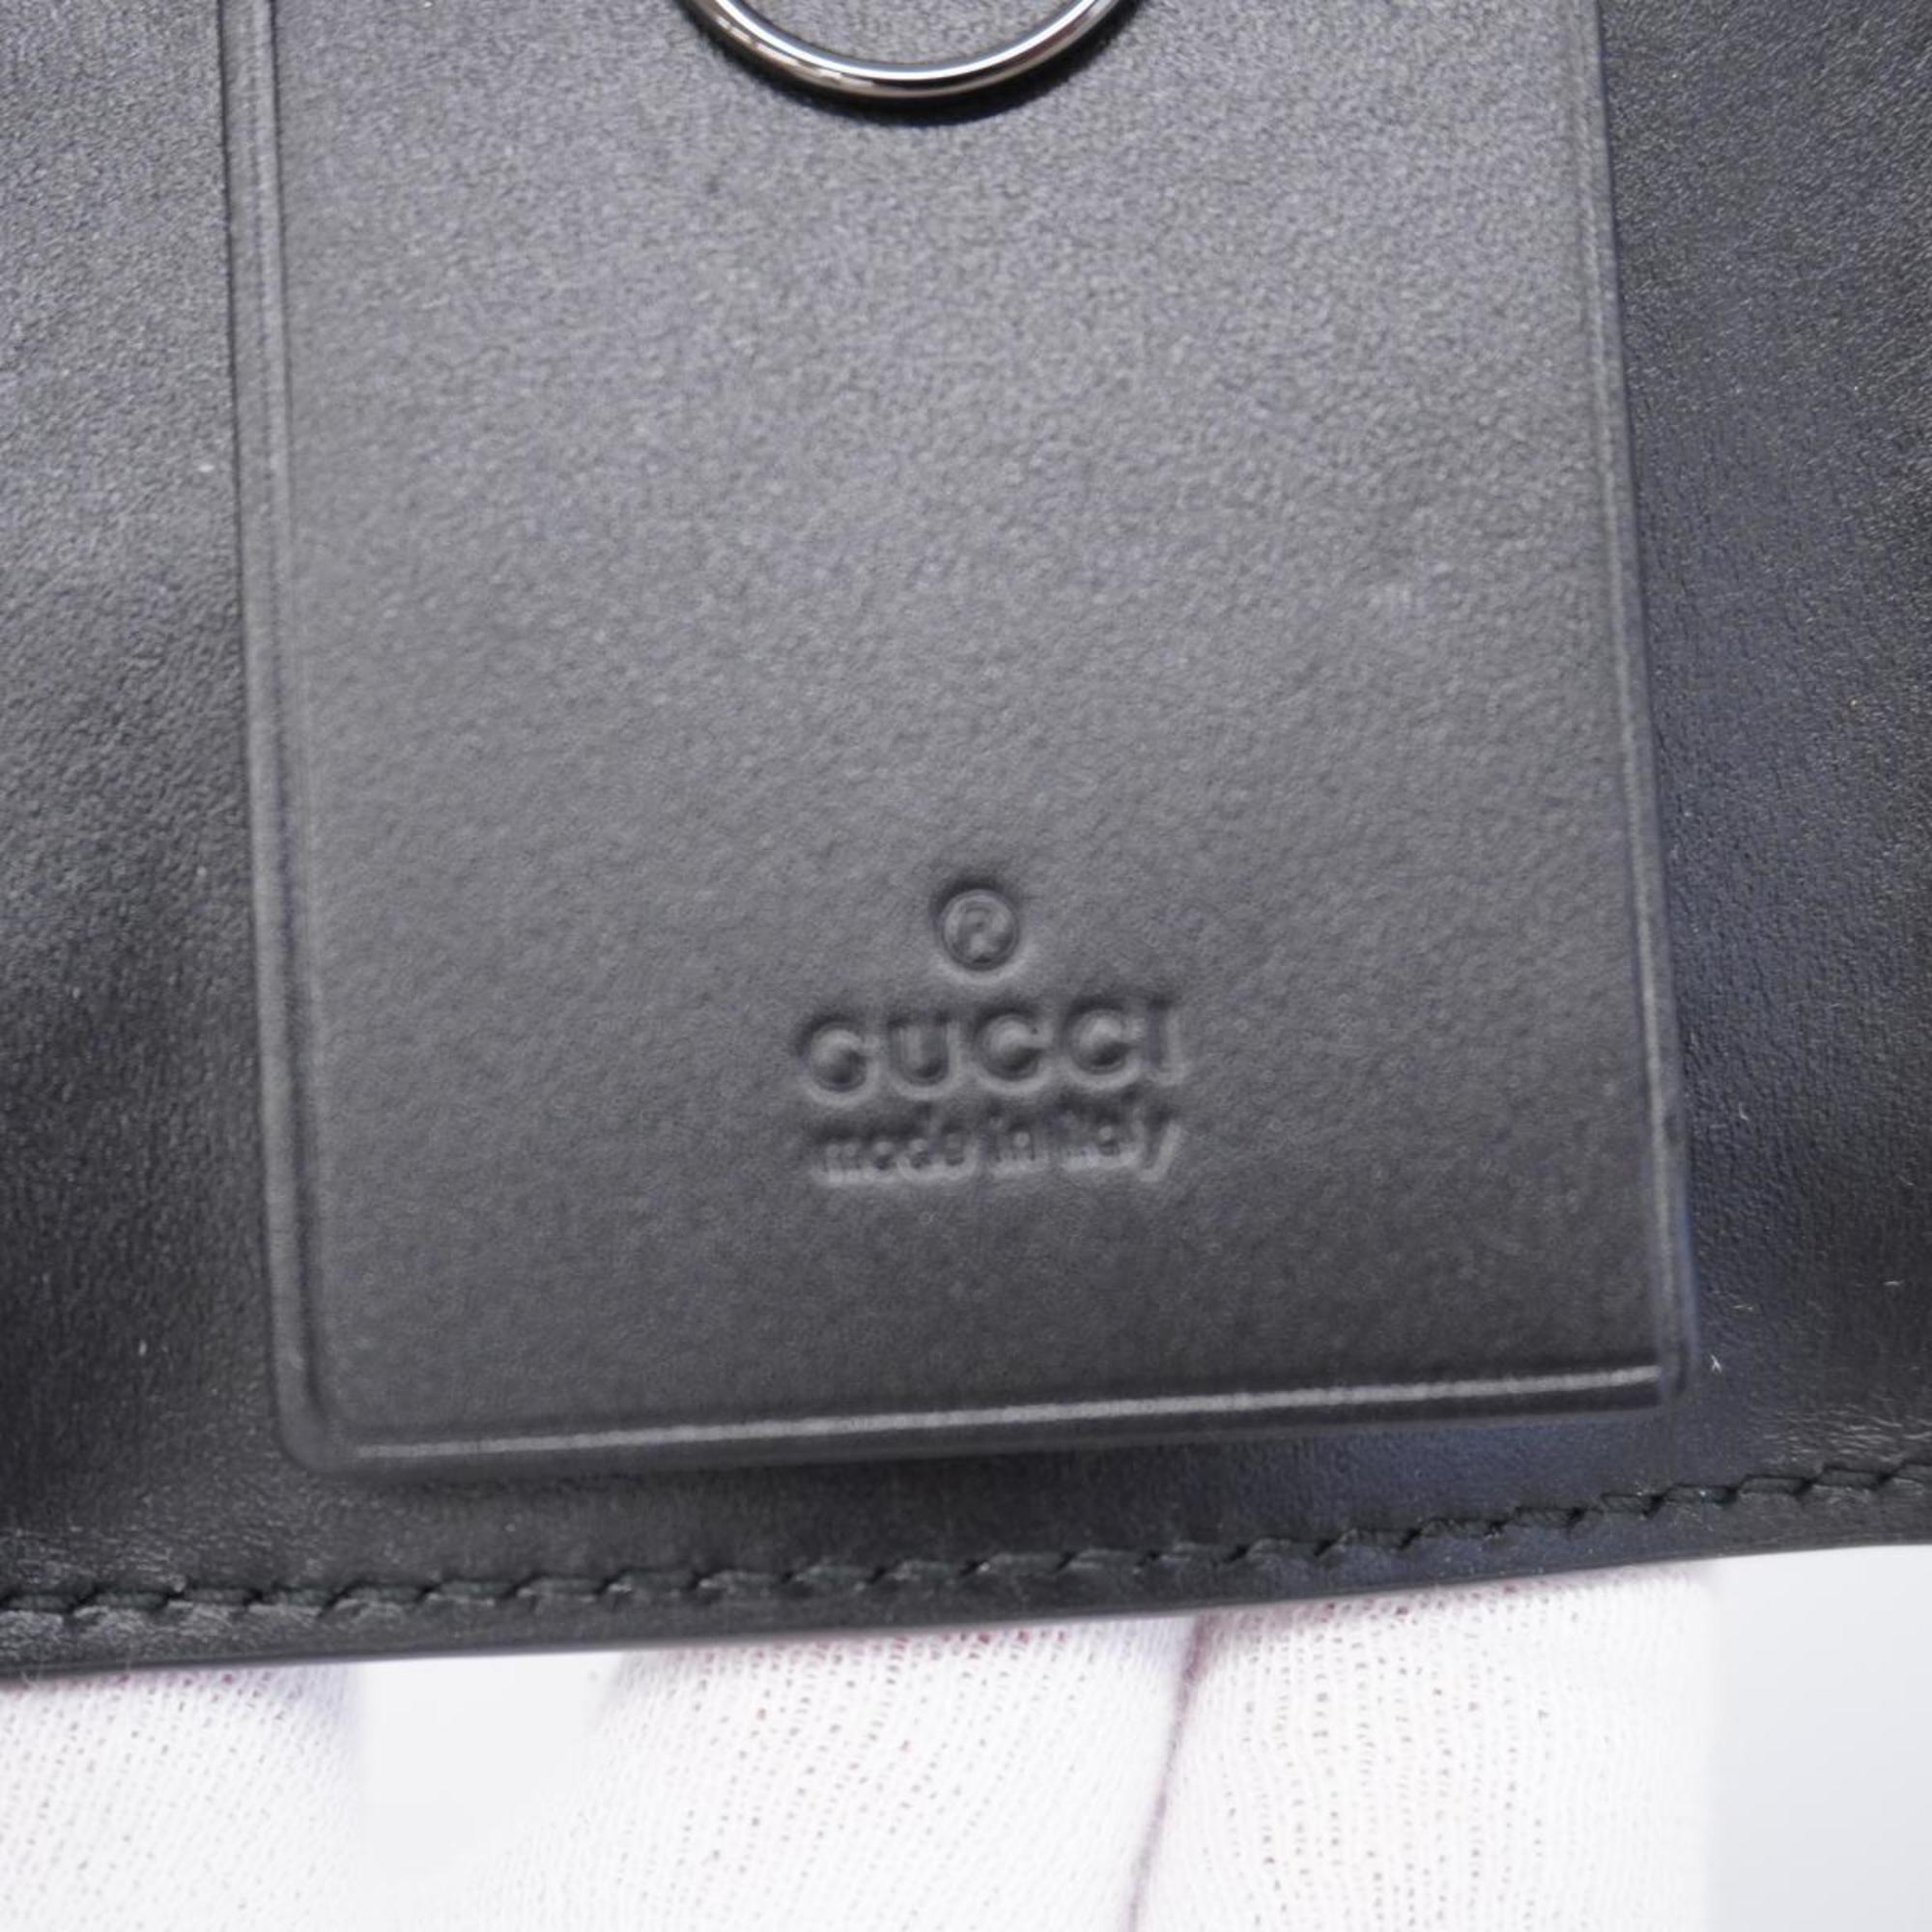 Gucci Key Case Guccissima Interlocking G 237509 Leather Black Men's